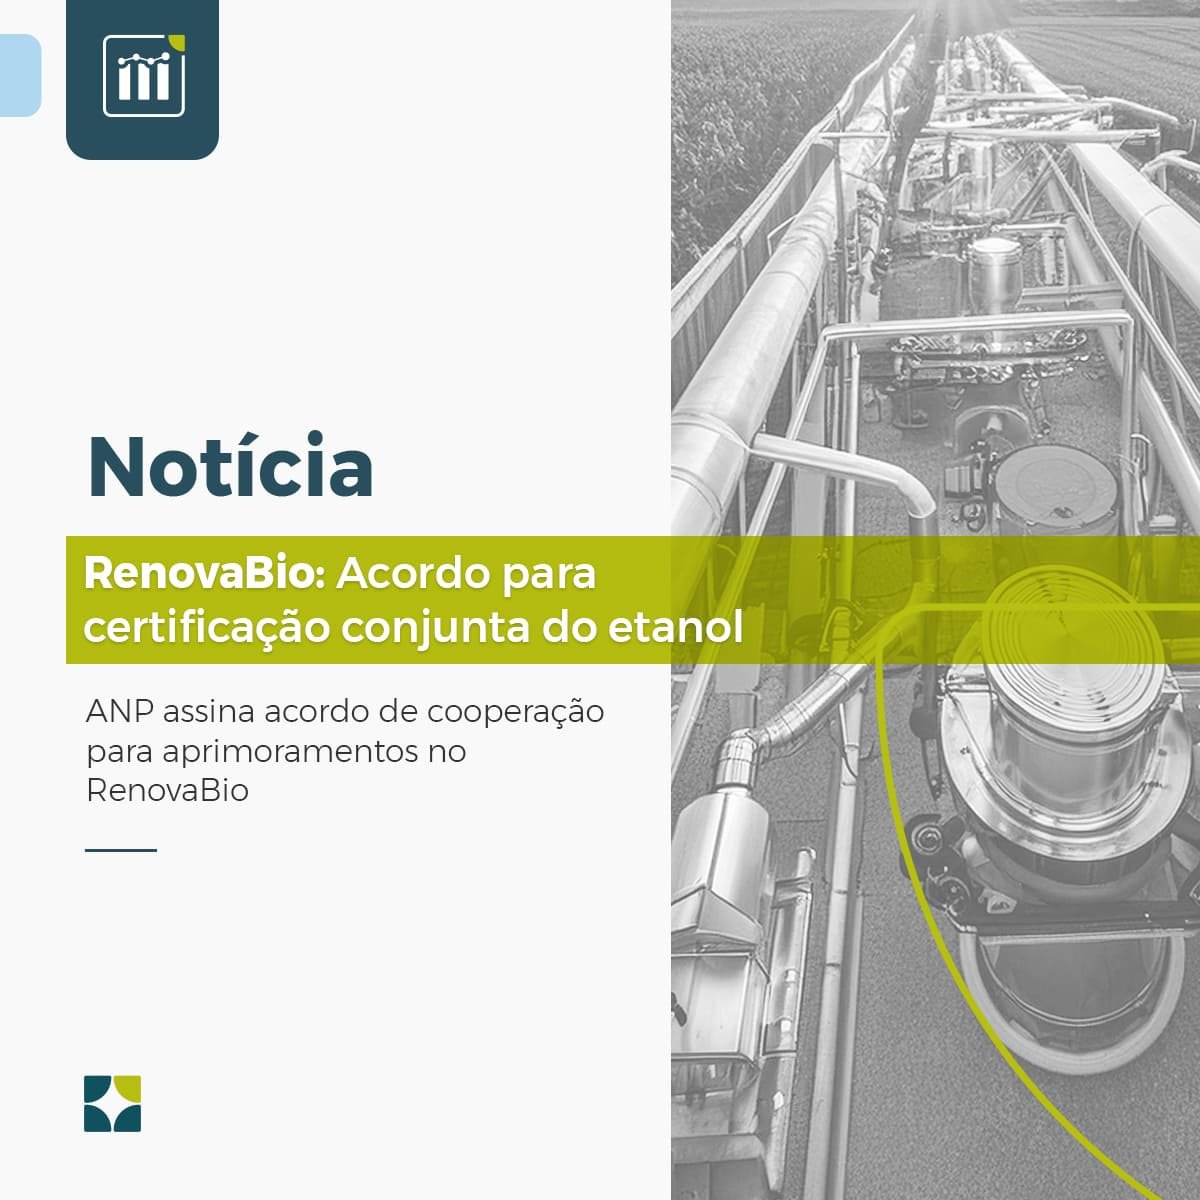 RenovaBio: Acordo para certificação conjunta do etanol